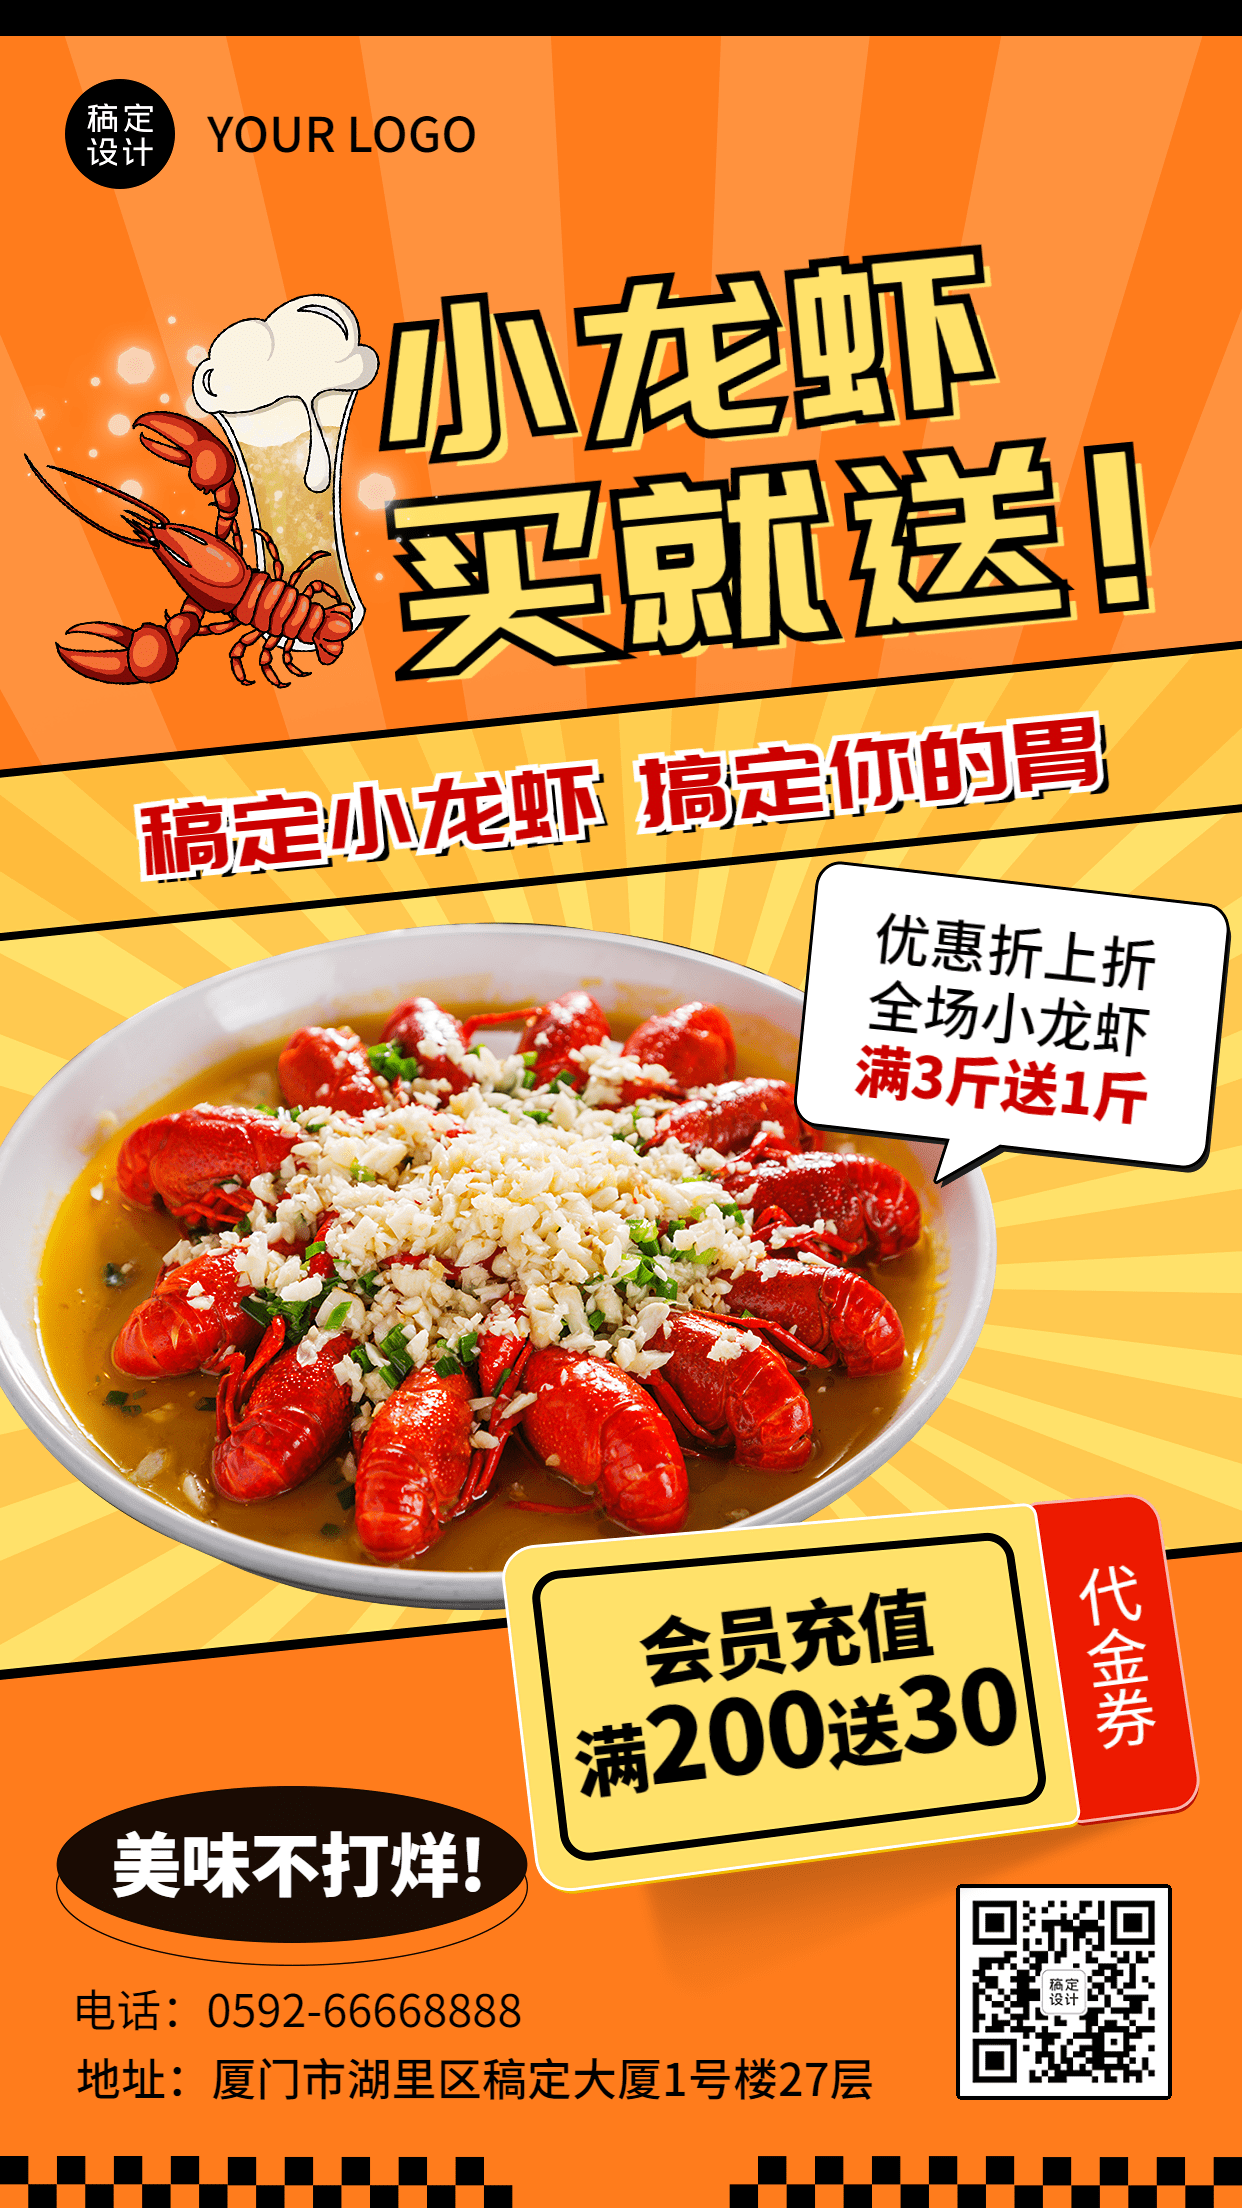 餐饮美食小龙虾新品上市促销活动营销手机海报预览效果